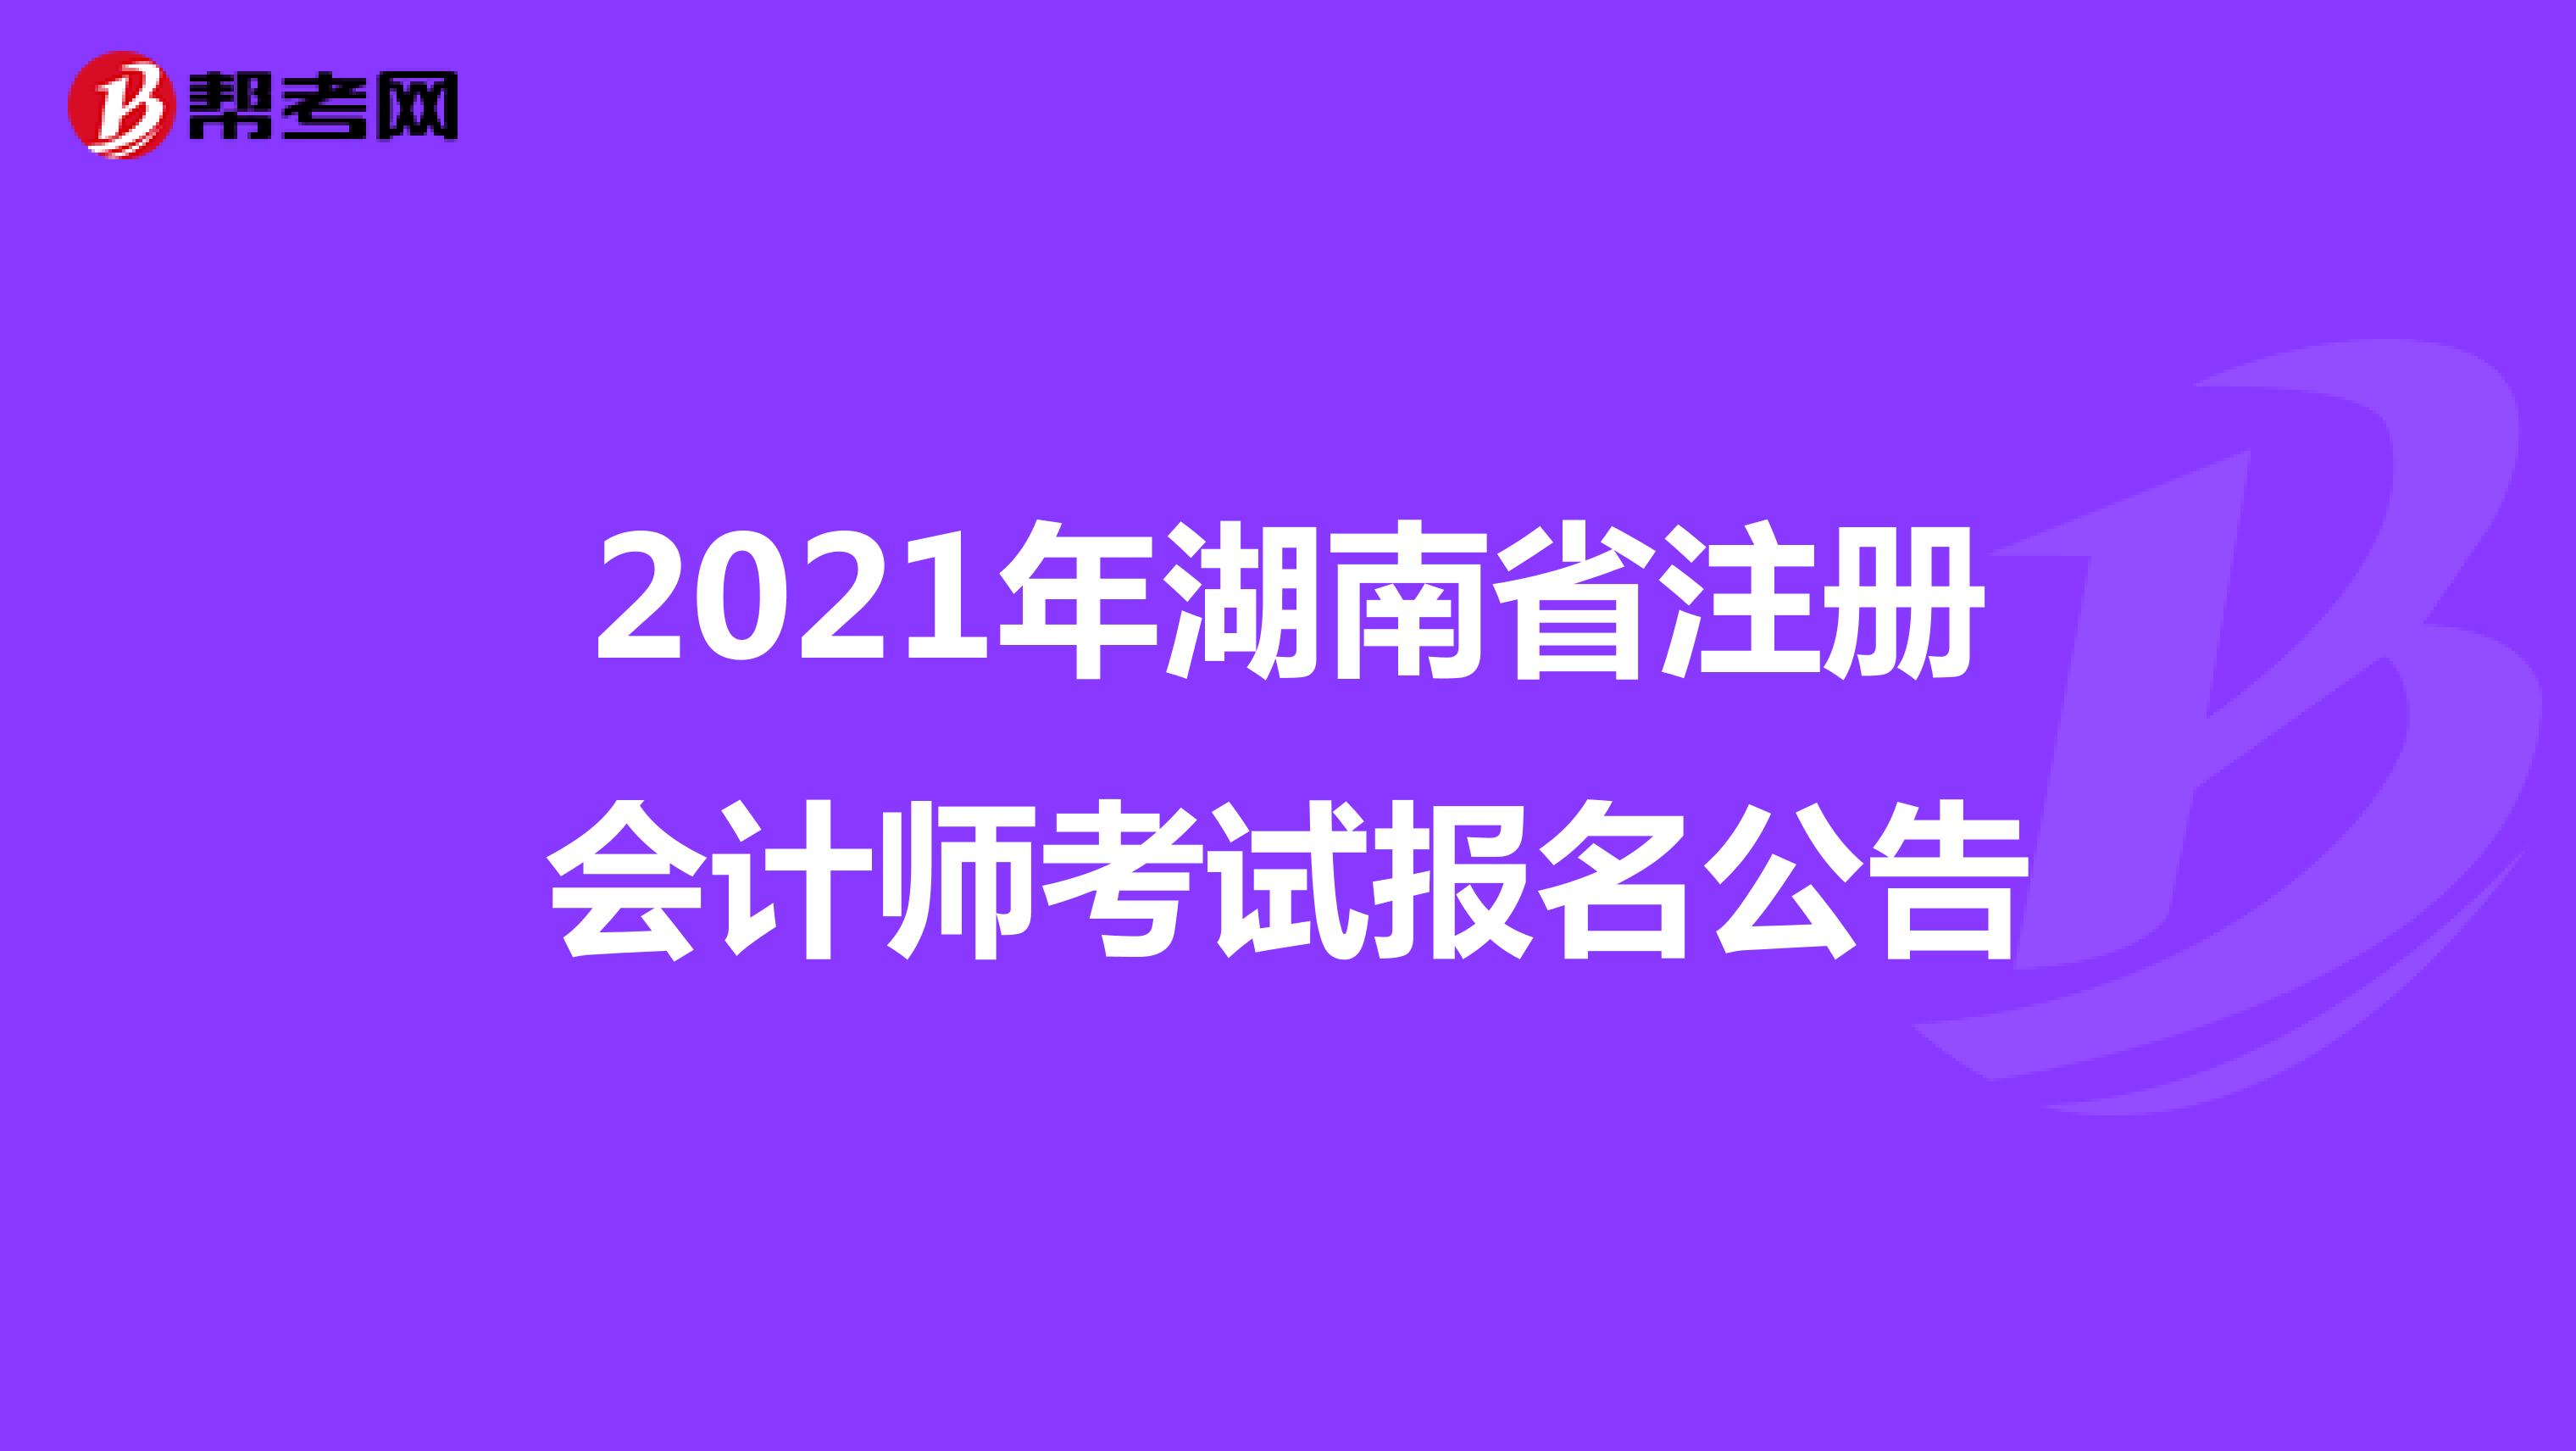 2021年湖南省注册会计师考试报名公告